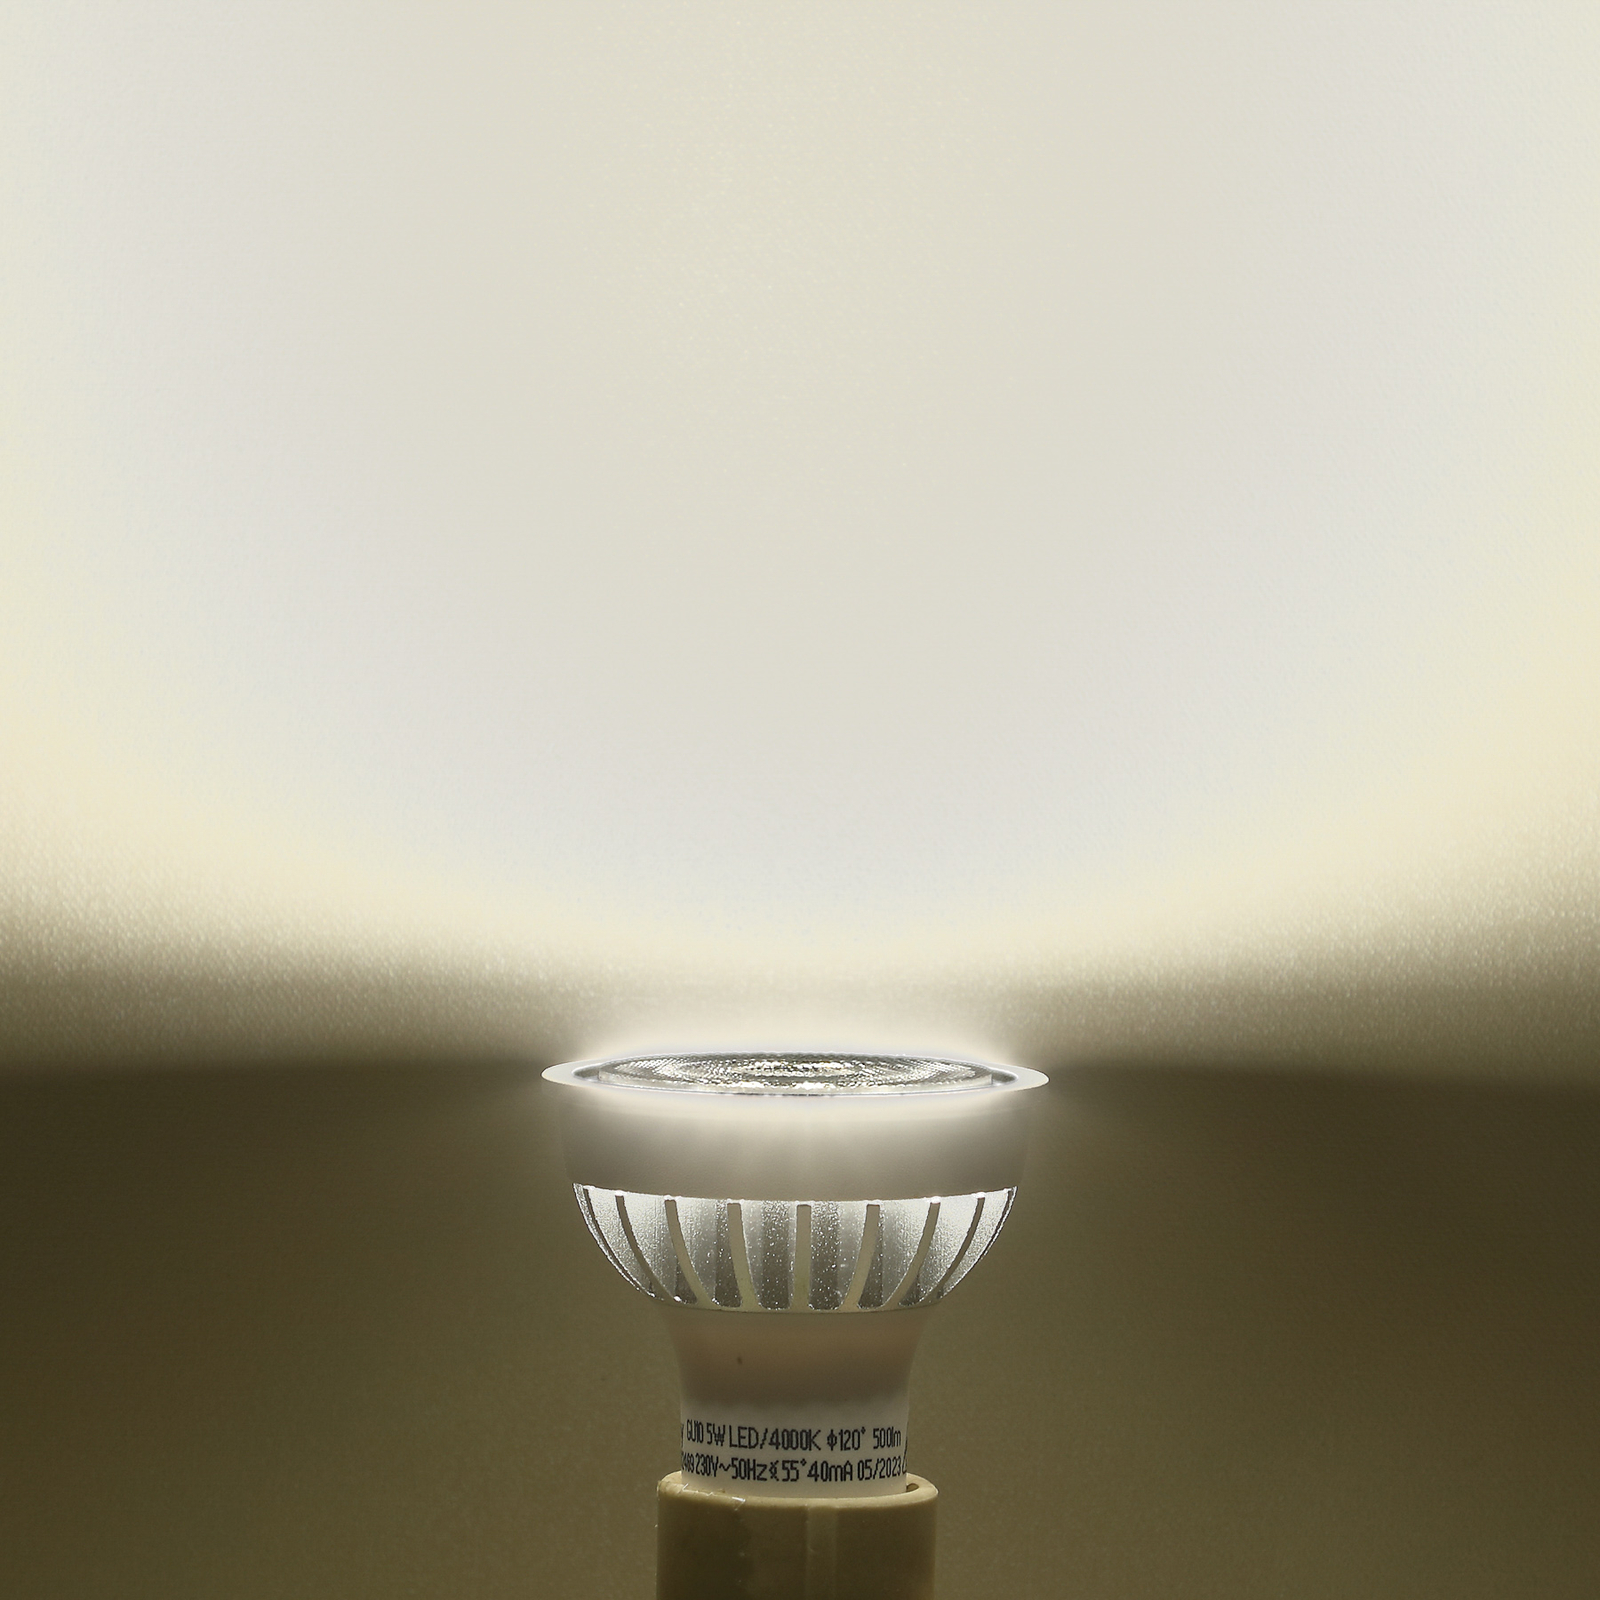 Reflector LED bulb GU10 5 W 4,000 K 55°